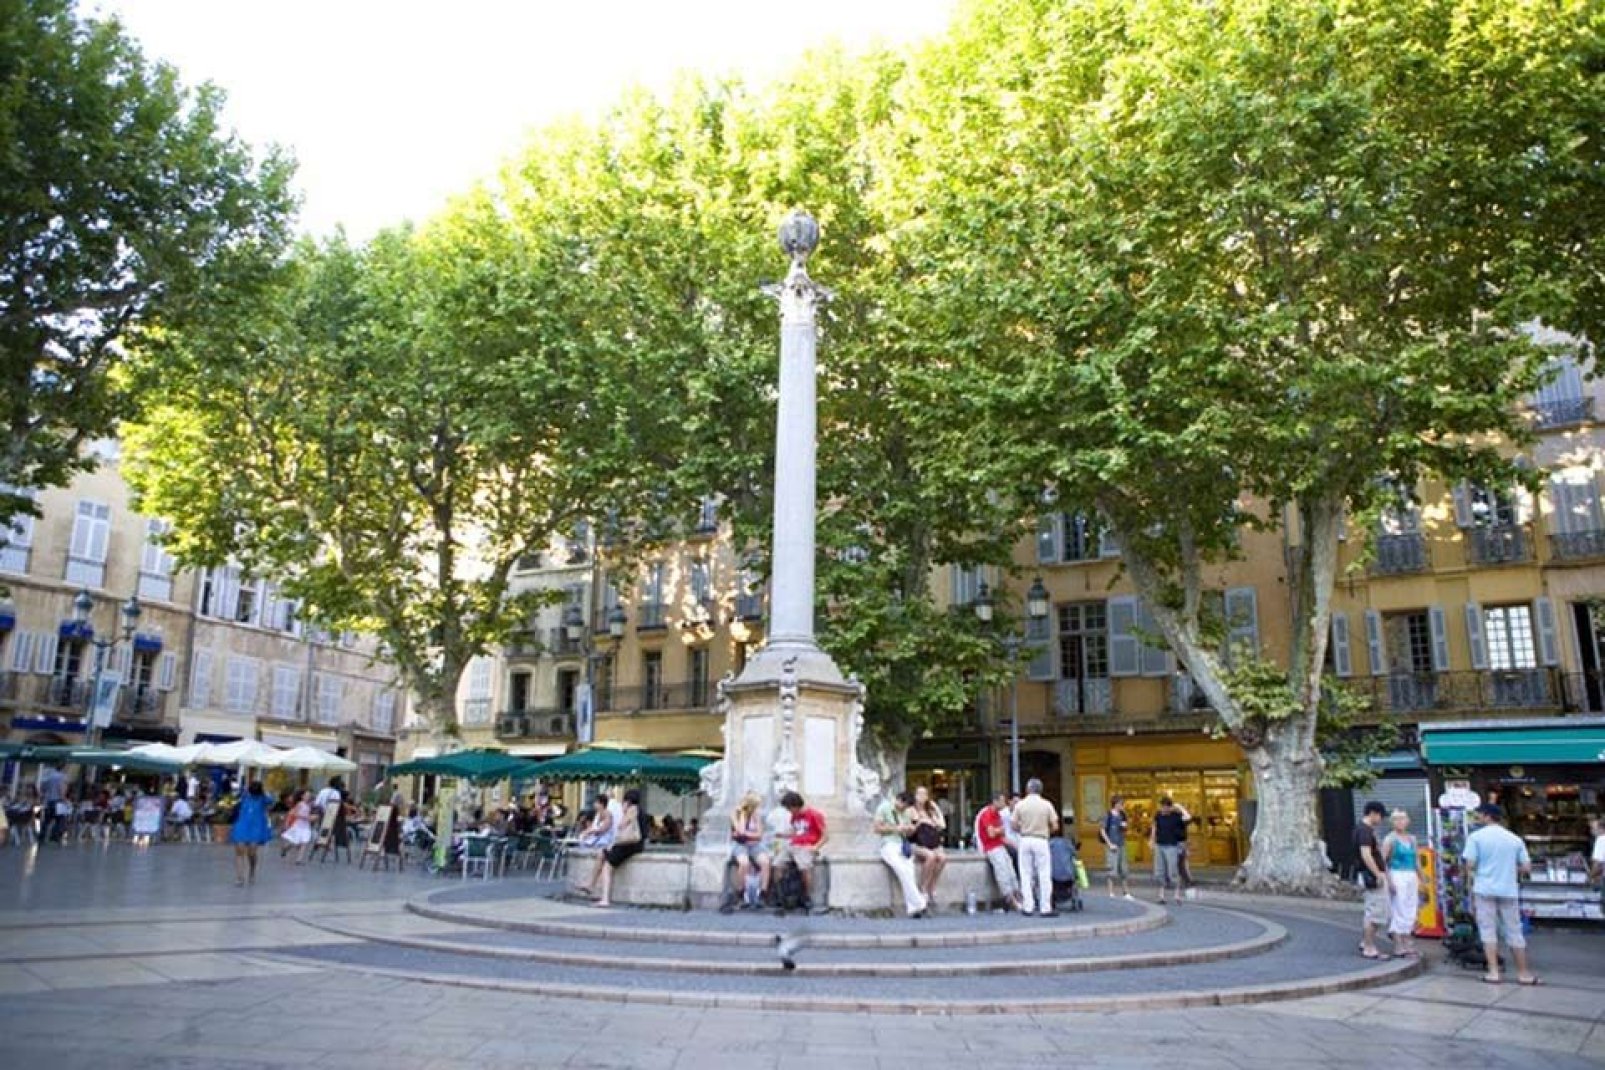 Costruita nel 1756, la fontana è facilmente riconoscibile grazie alla colonna romana che la sovrasta. Si tratta del luogo di ritrovo per eccellenza di Aix.